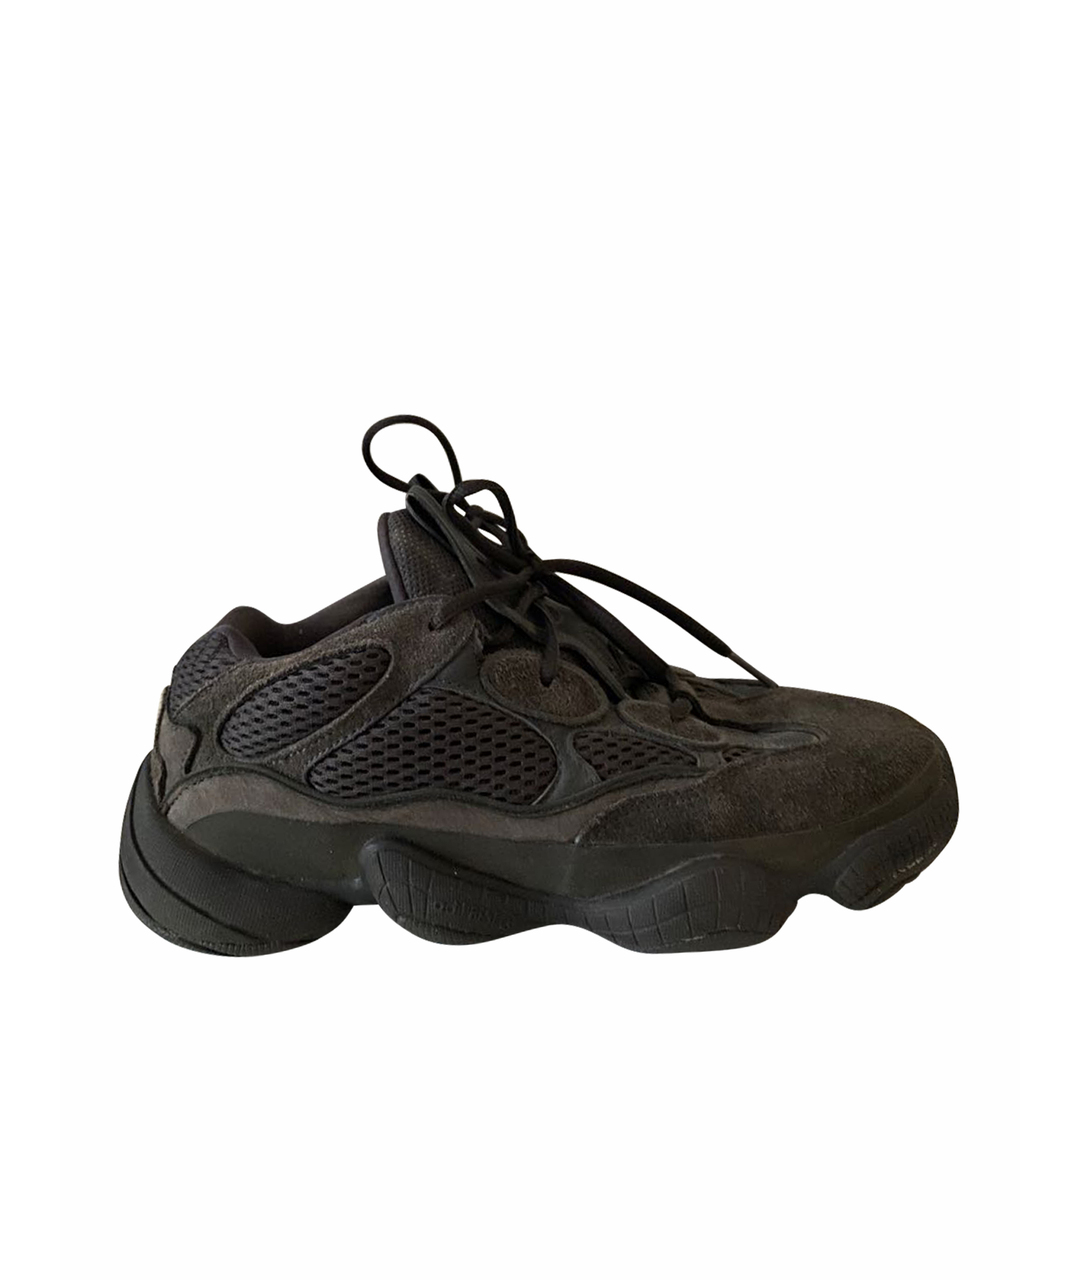 ADIDAS YEEZY Антрацитовые замшевые низкие кроссовки / кеды, фото 1